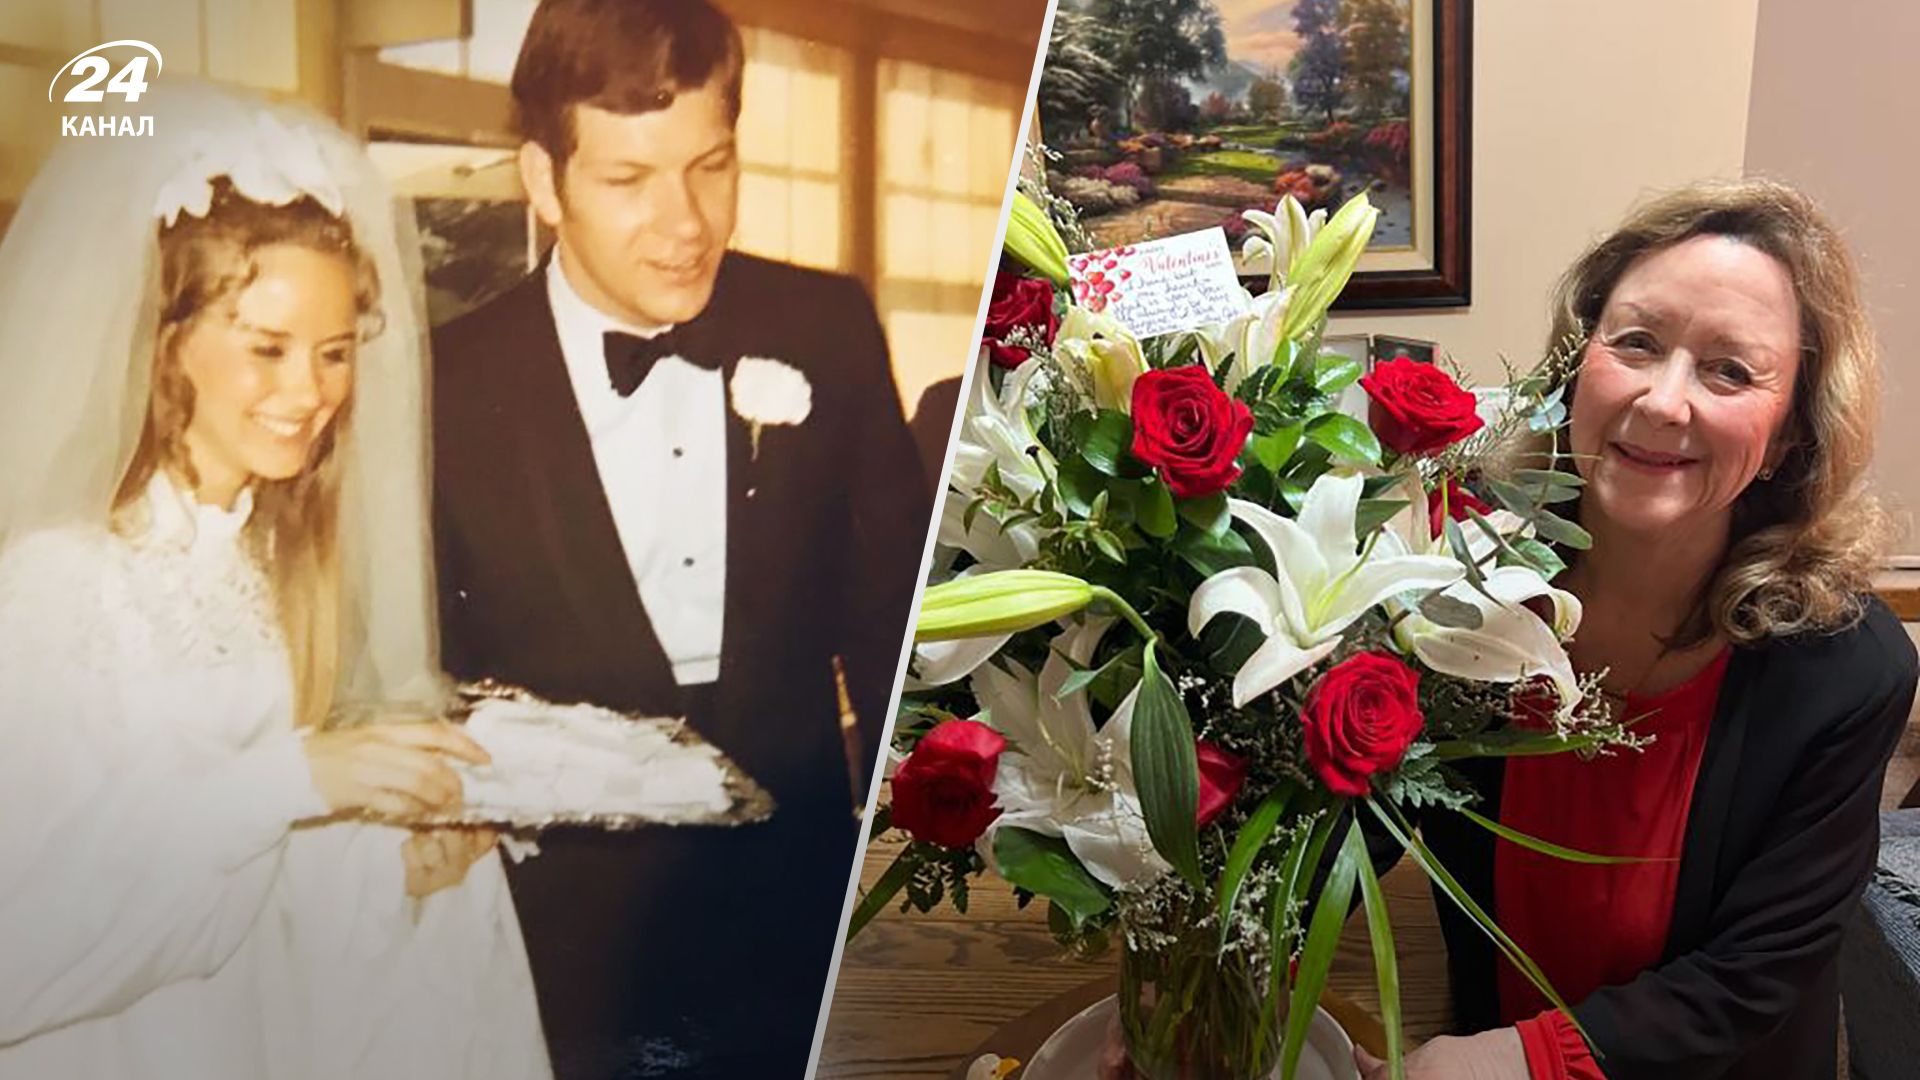 Джон Мейвер умер в 2017, а его жене Диане до сих пор доставляют цветы